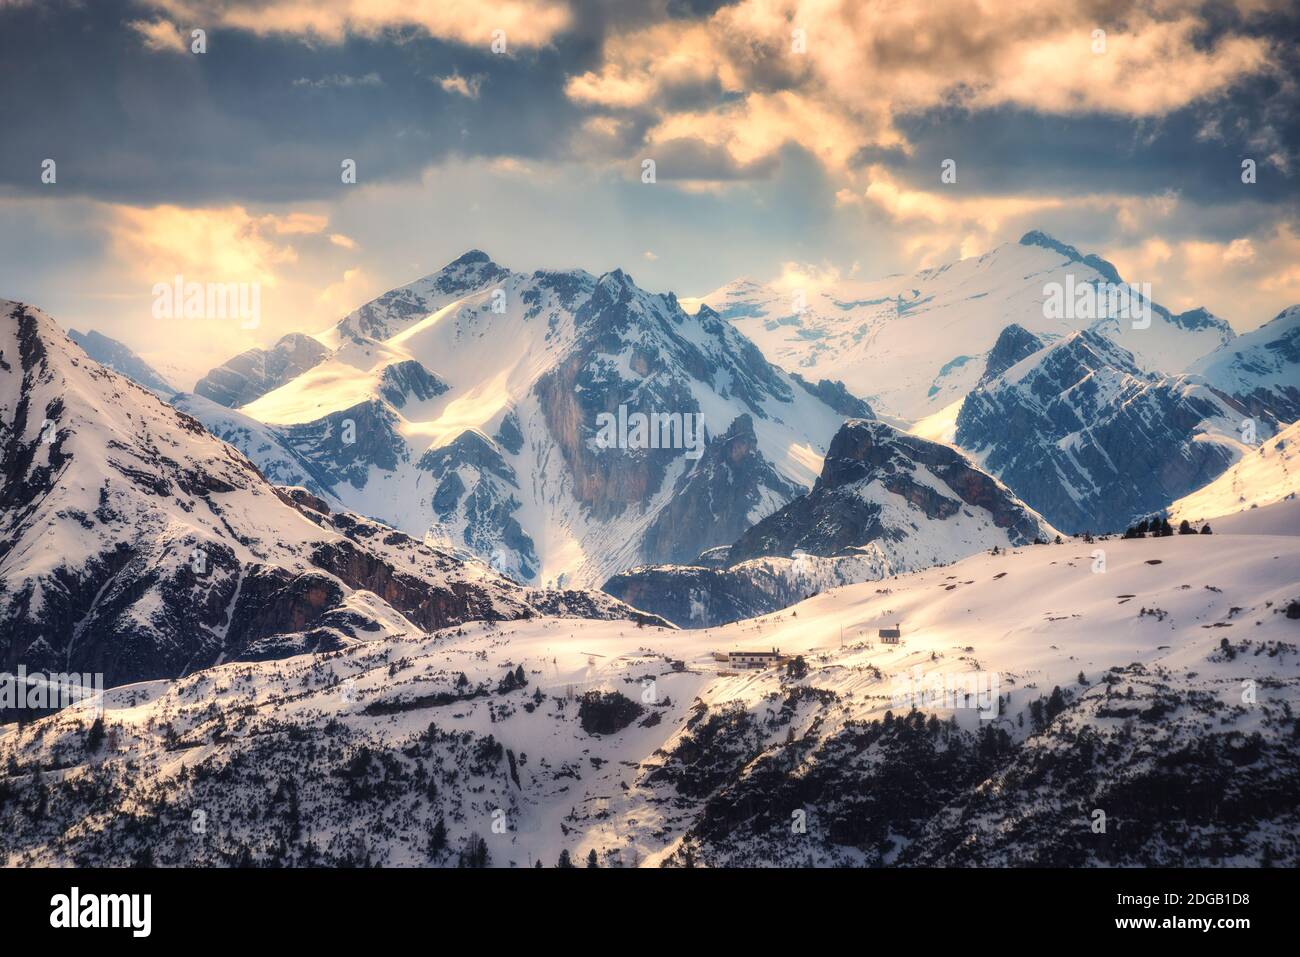 Schneebedeckte Berge werden bei Sonnenuntergang im Winter vom Sonnenstrahl beleuchtet Stockfoto